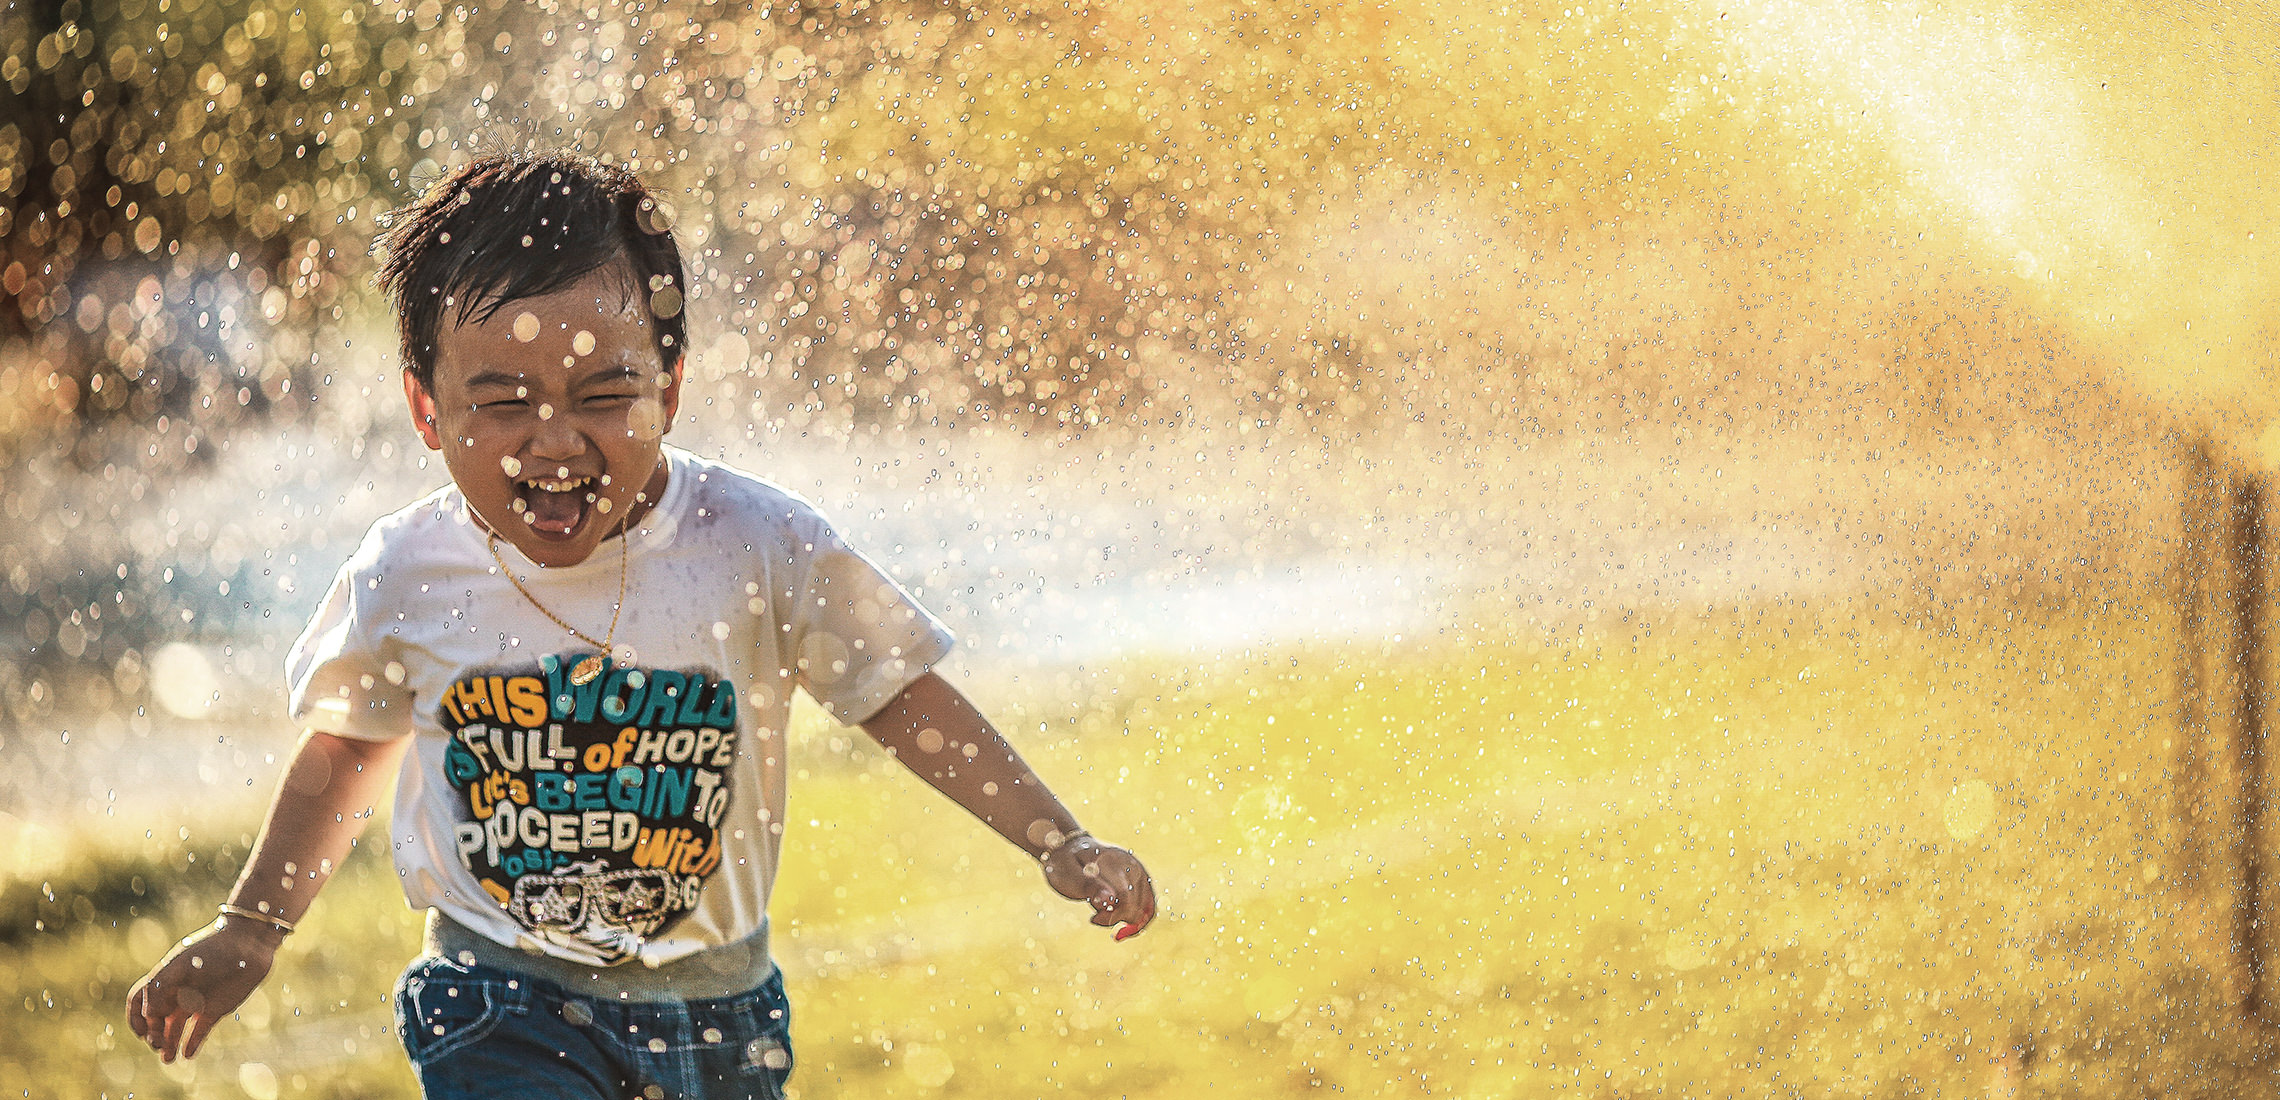 Young boy running through water sprinkler.